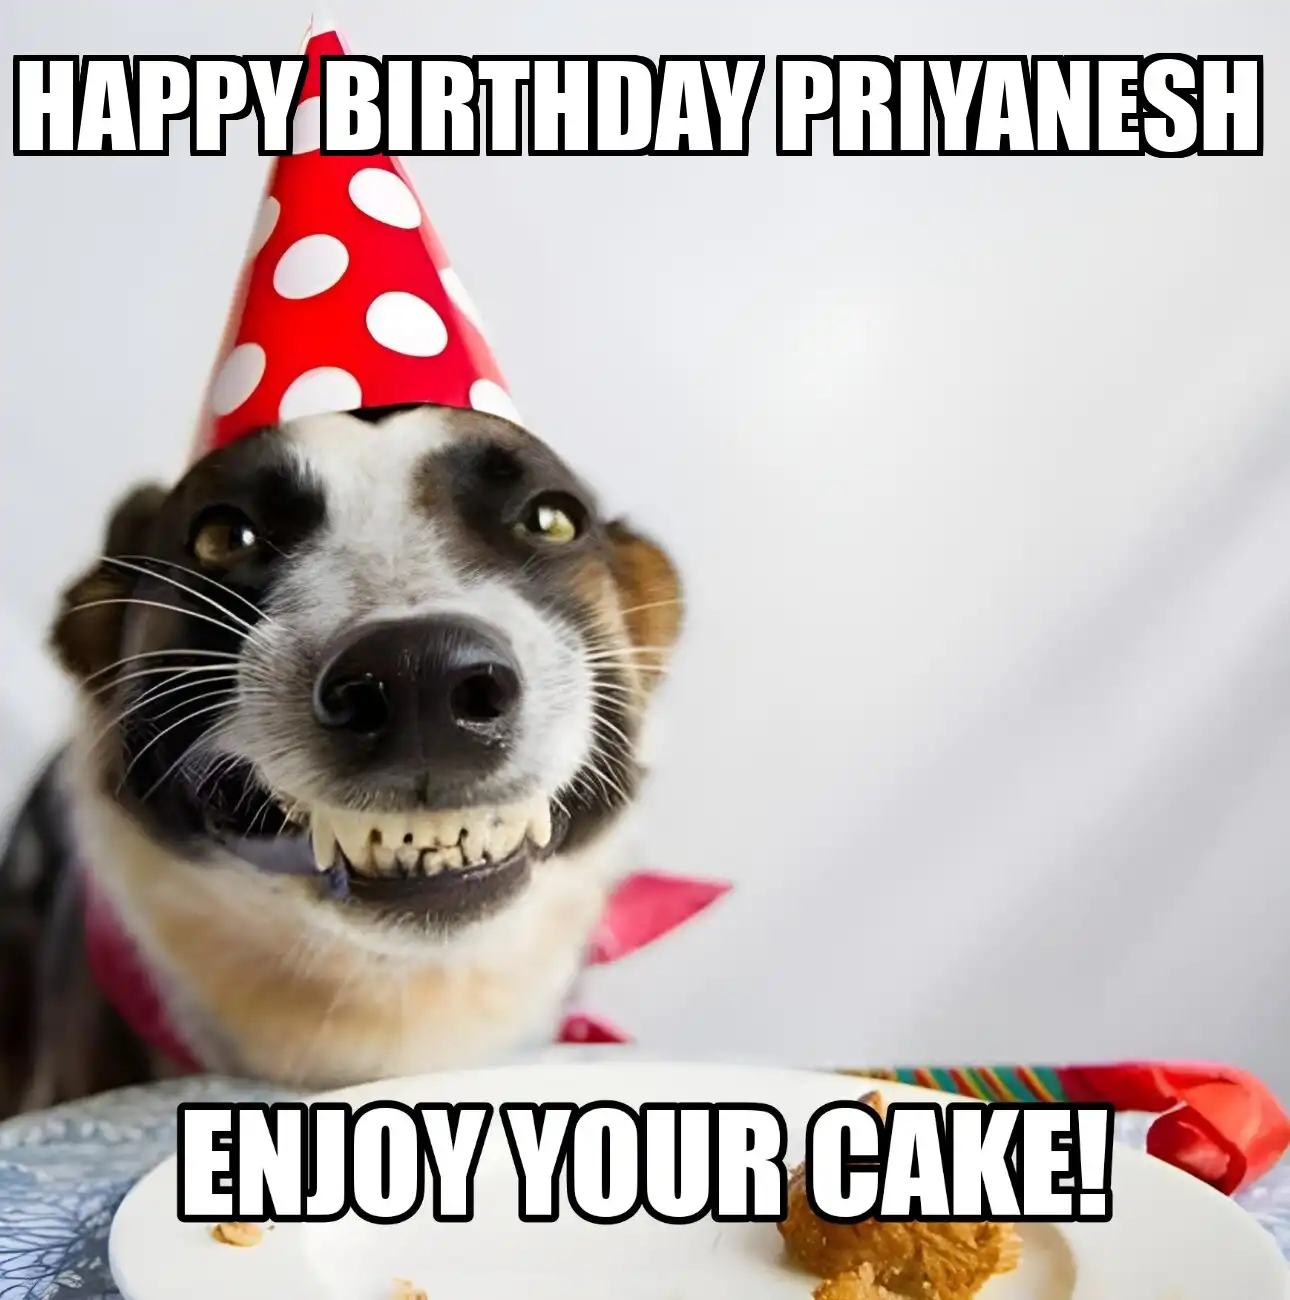 Happy Birthday Priyanesh Enjoy Your Cake Dog Meme